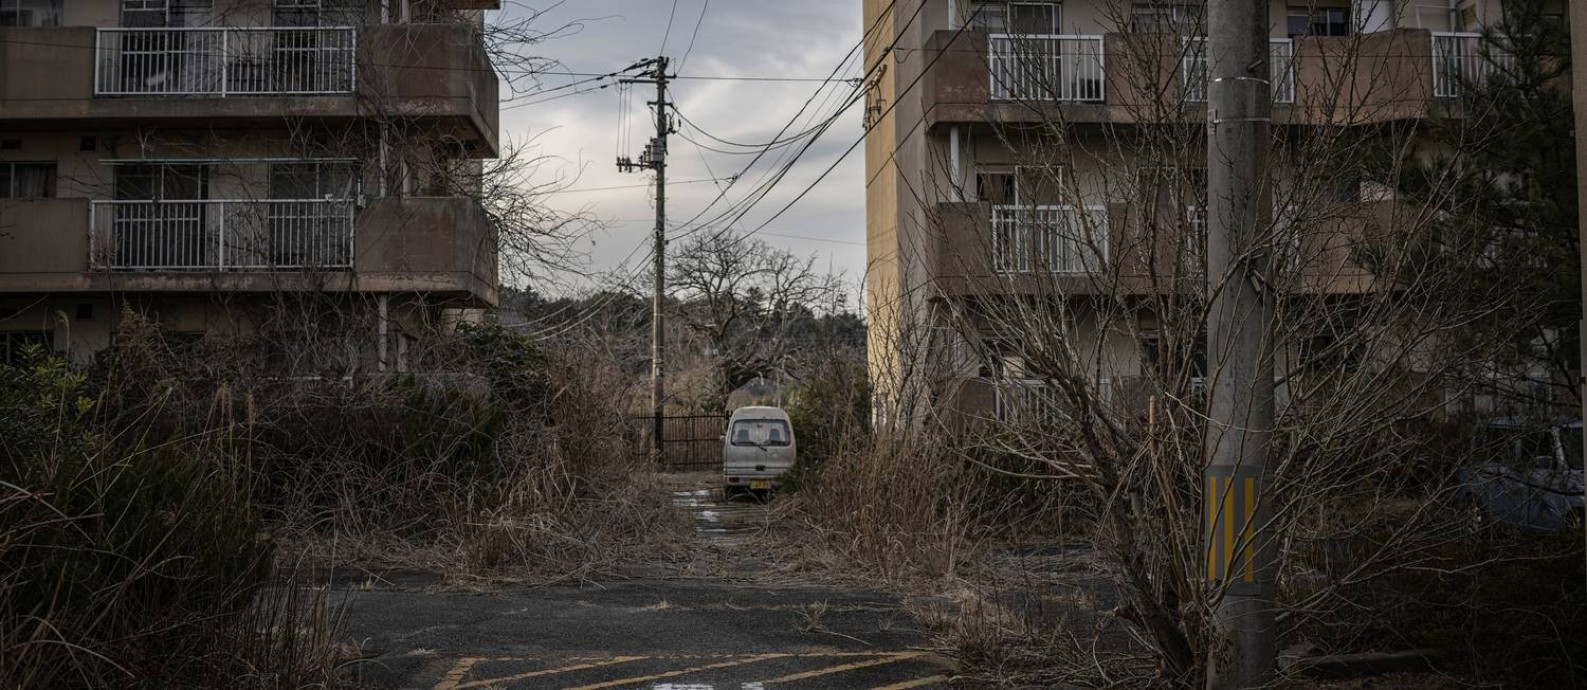 Mato cresce em condomínio de Futuba, cidade mais próxima da usina nuclear de Fukushima Foto: JAMES WHITLOW DELANO / NYT